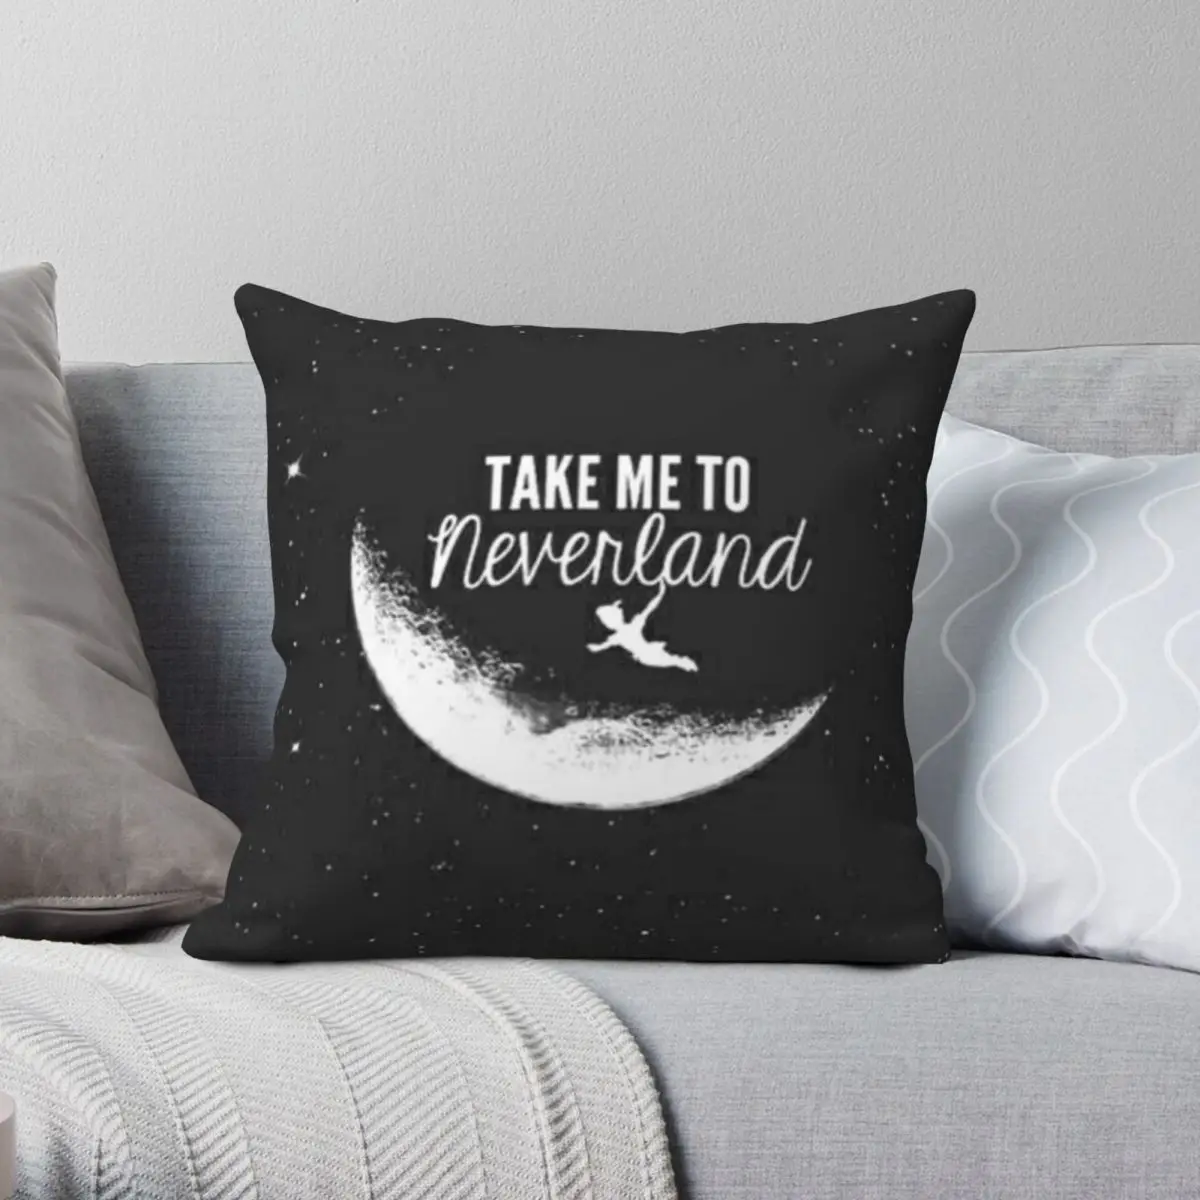 

Take Me To Neverland Pillowcase Polyester Linen Velvet Pattern Zip Decor Car Cushion Cover 18"